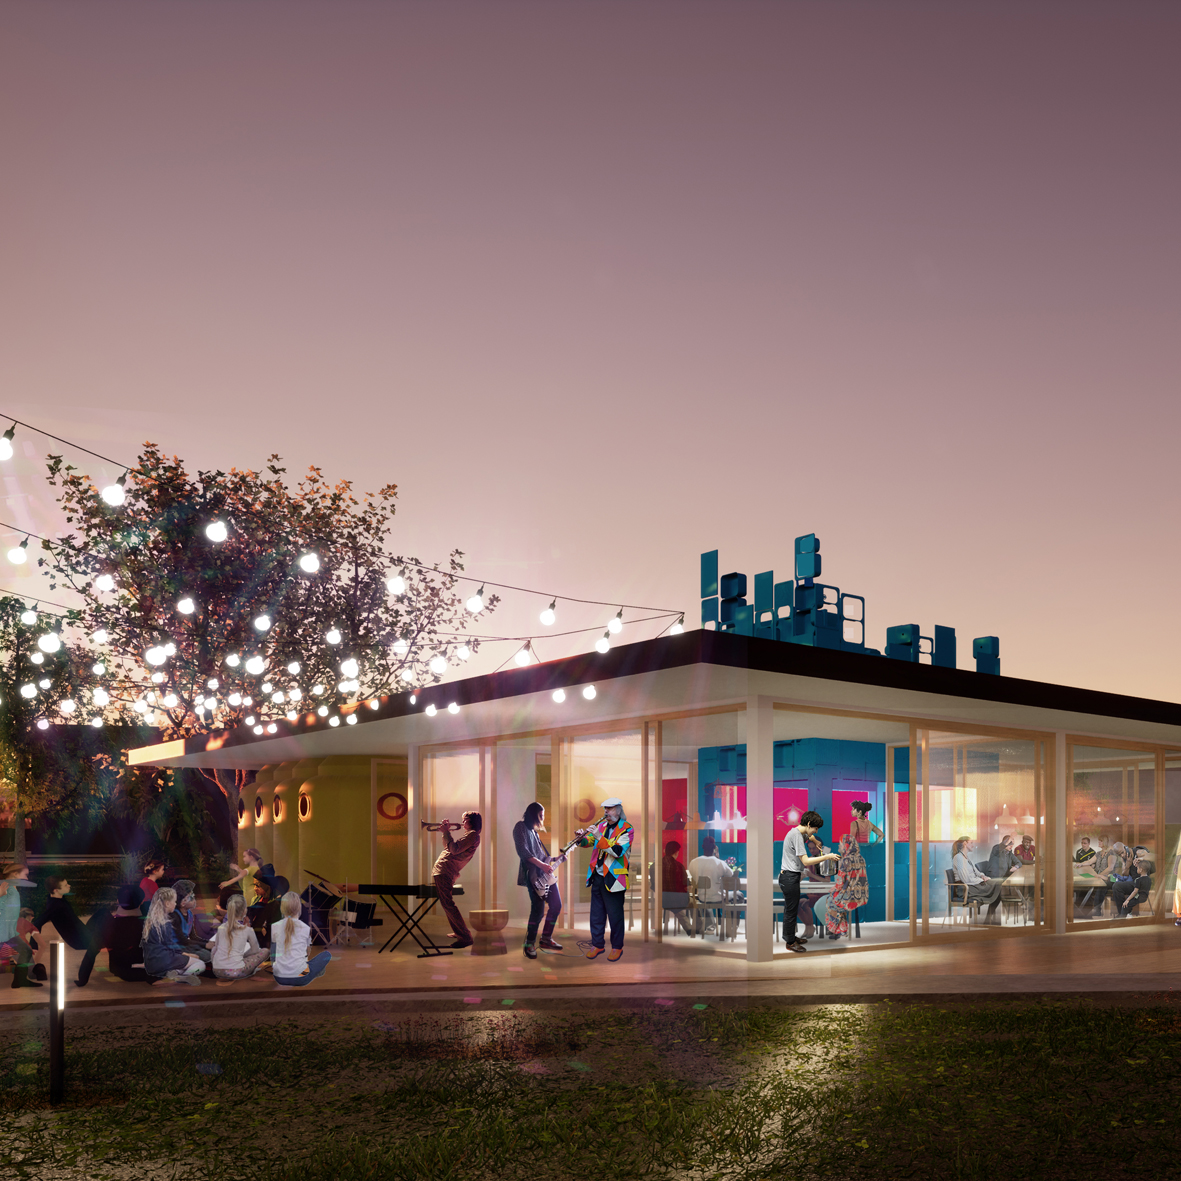 Community Centre De Zeeslag, designed by NOAHH | Network Oriented Architecture